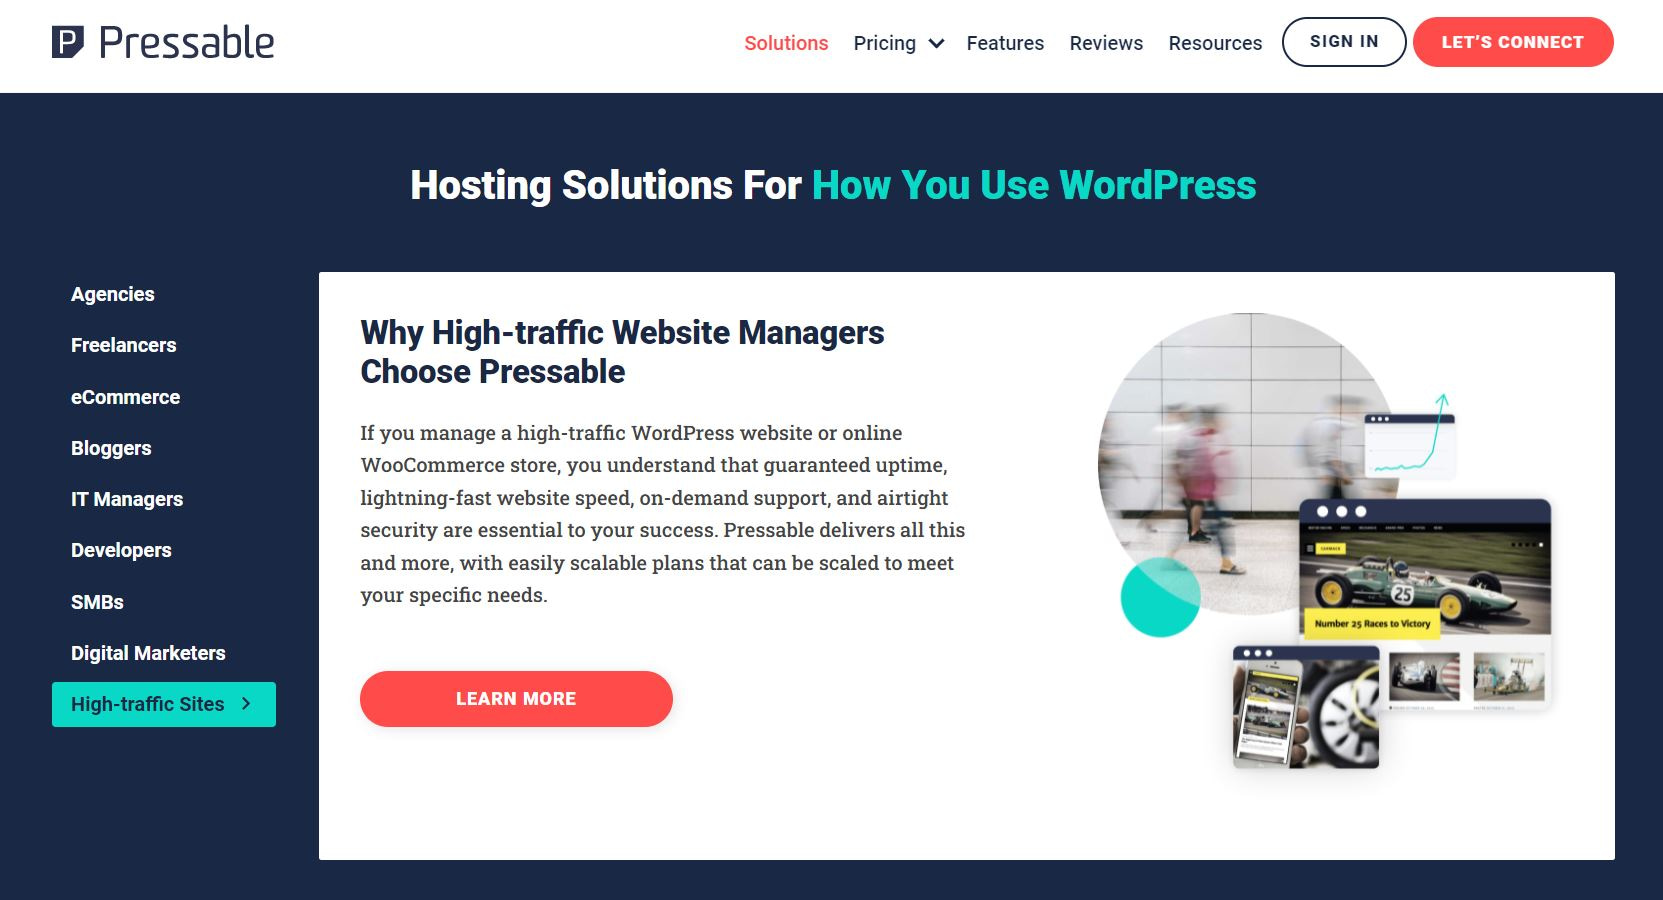 Pressable's enterprise WordPress hosting